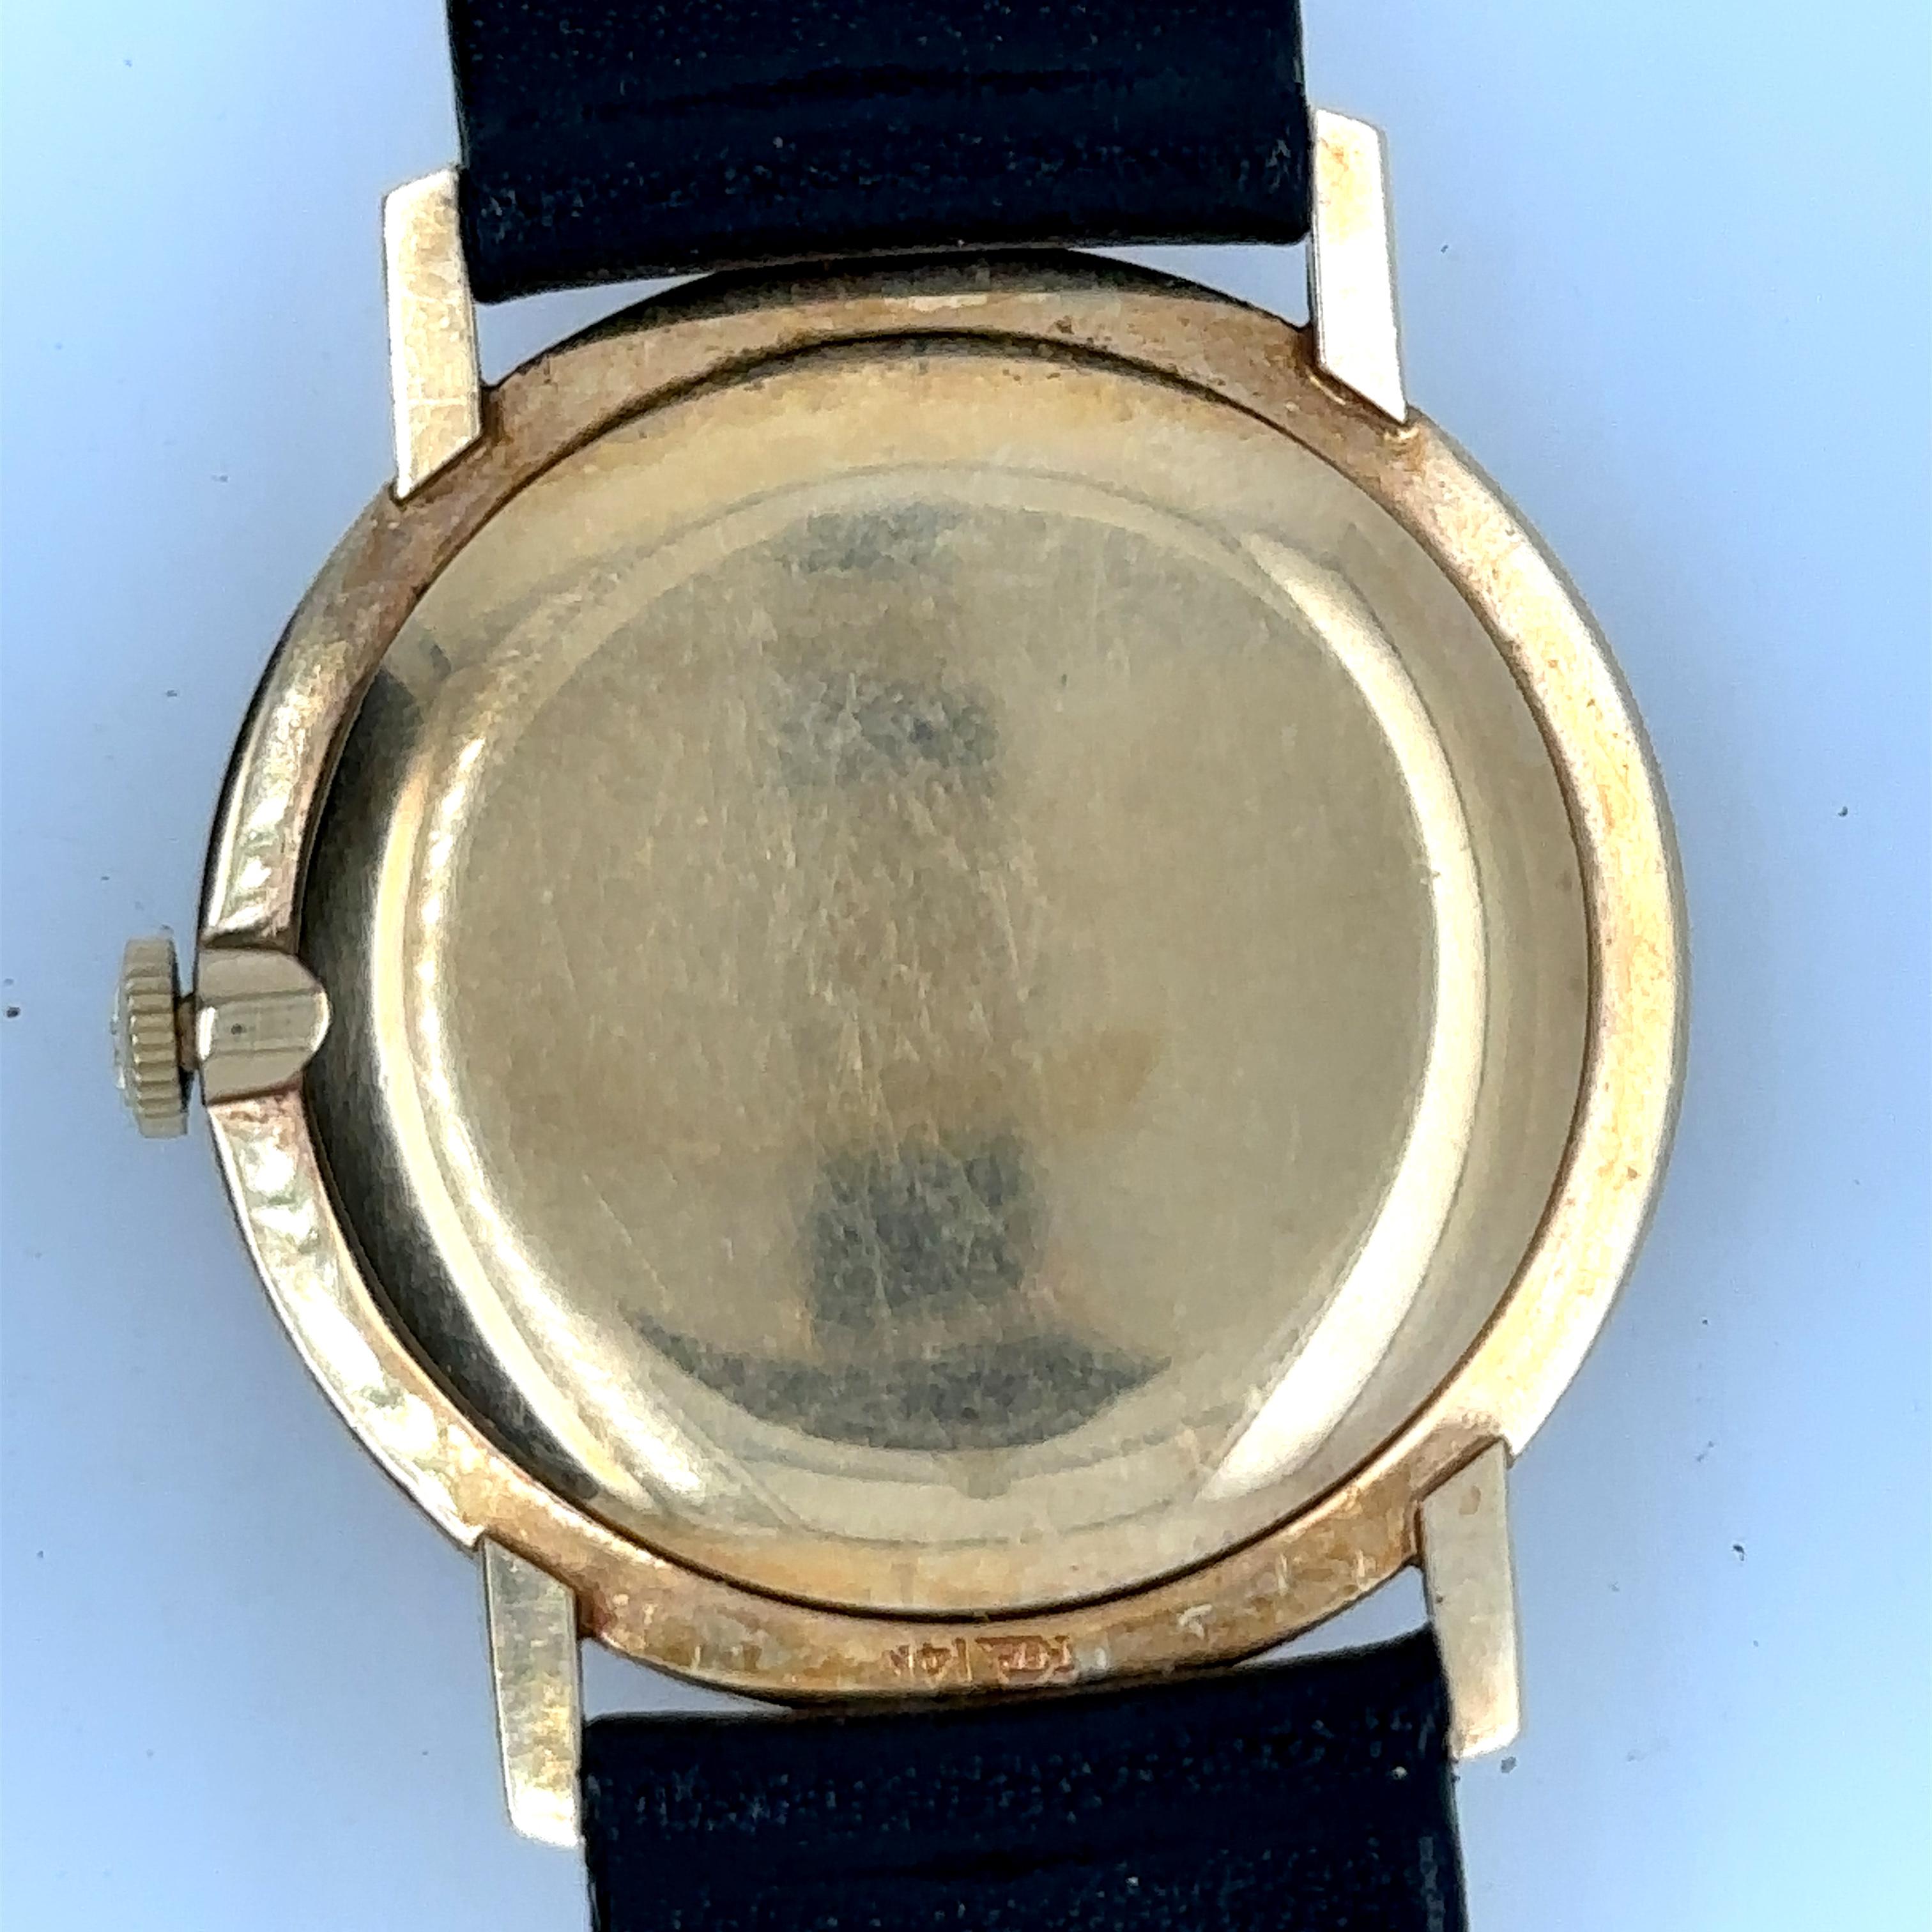 Vintage Jaeger-LeCoultre 17J Dia Dial Solid 14K Gold Watch.
Boîtier, lunette et fond en or jaune 14k.
Cadran de couleur champagne avec un ovale noir comportant 10 index en diamant.
Chiffres romains à 12 et 6 heures.
Le bracelet a été remplacé par un